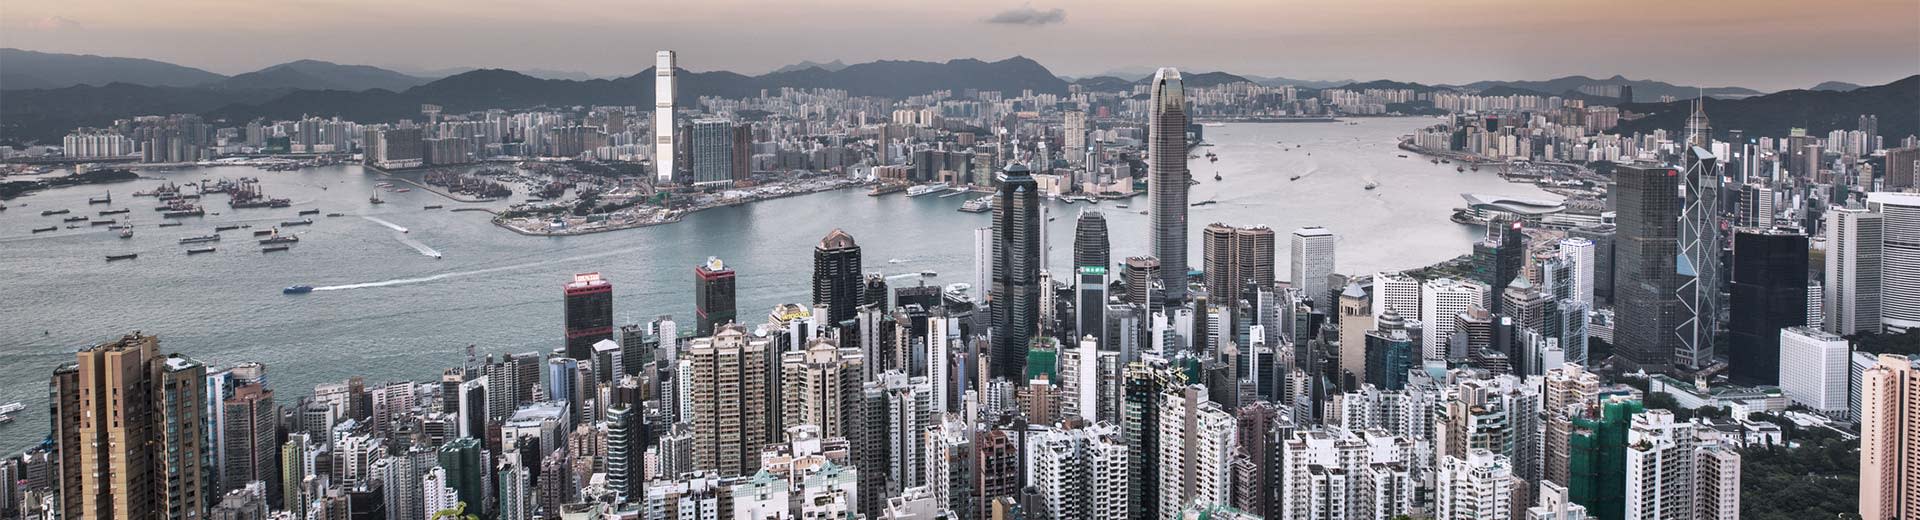 La extensa masa de rascacielos en la famosa ciudad de Hong Kong en un día gris.